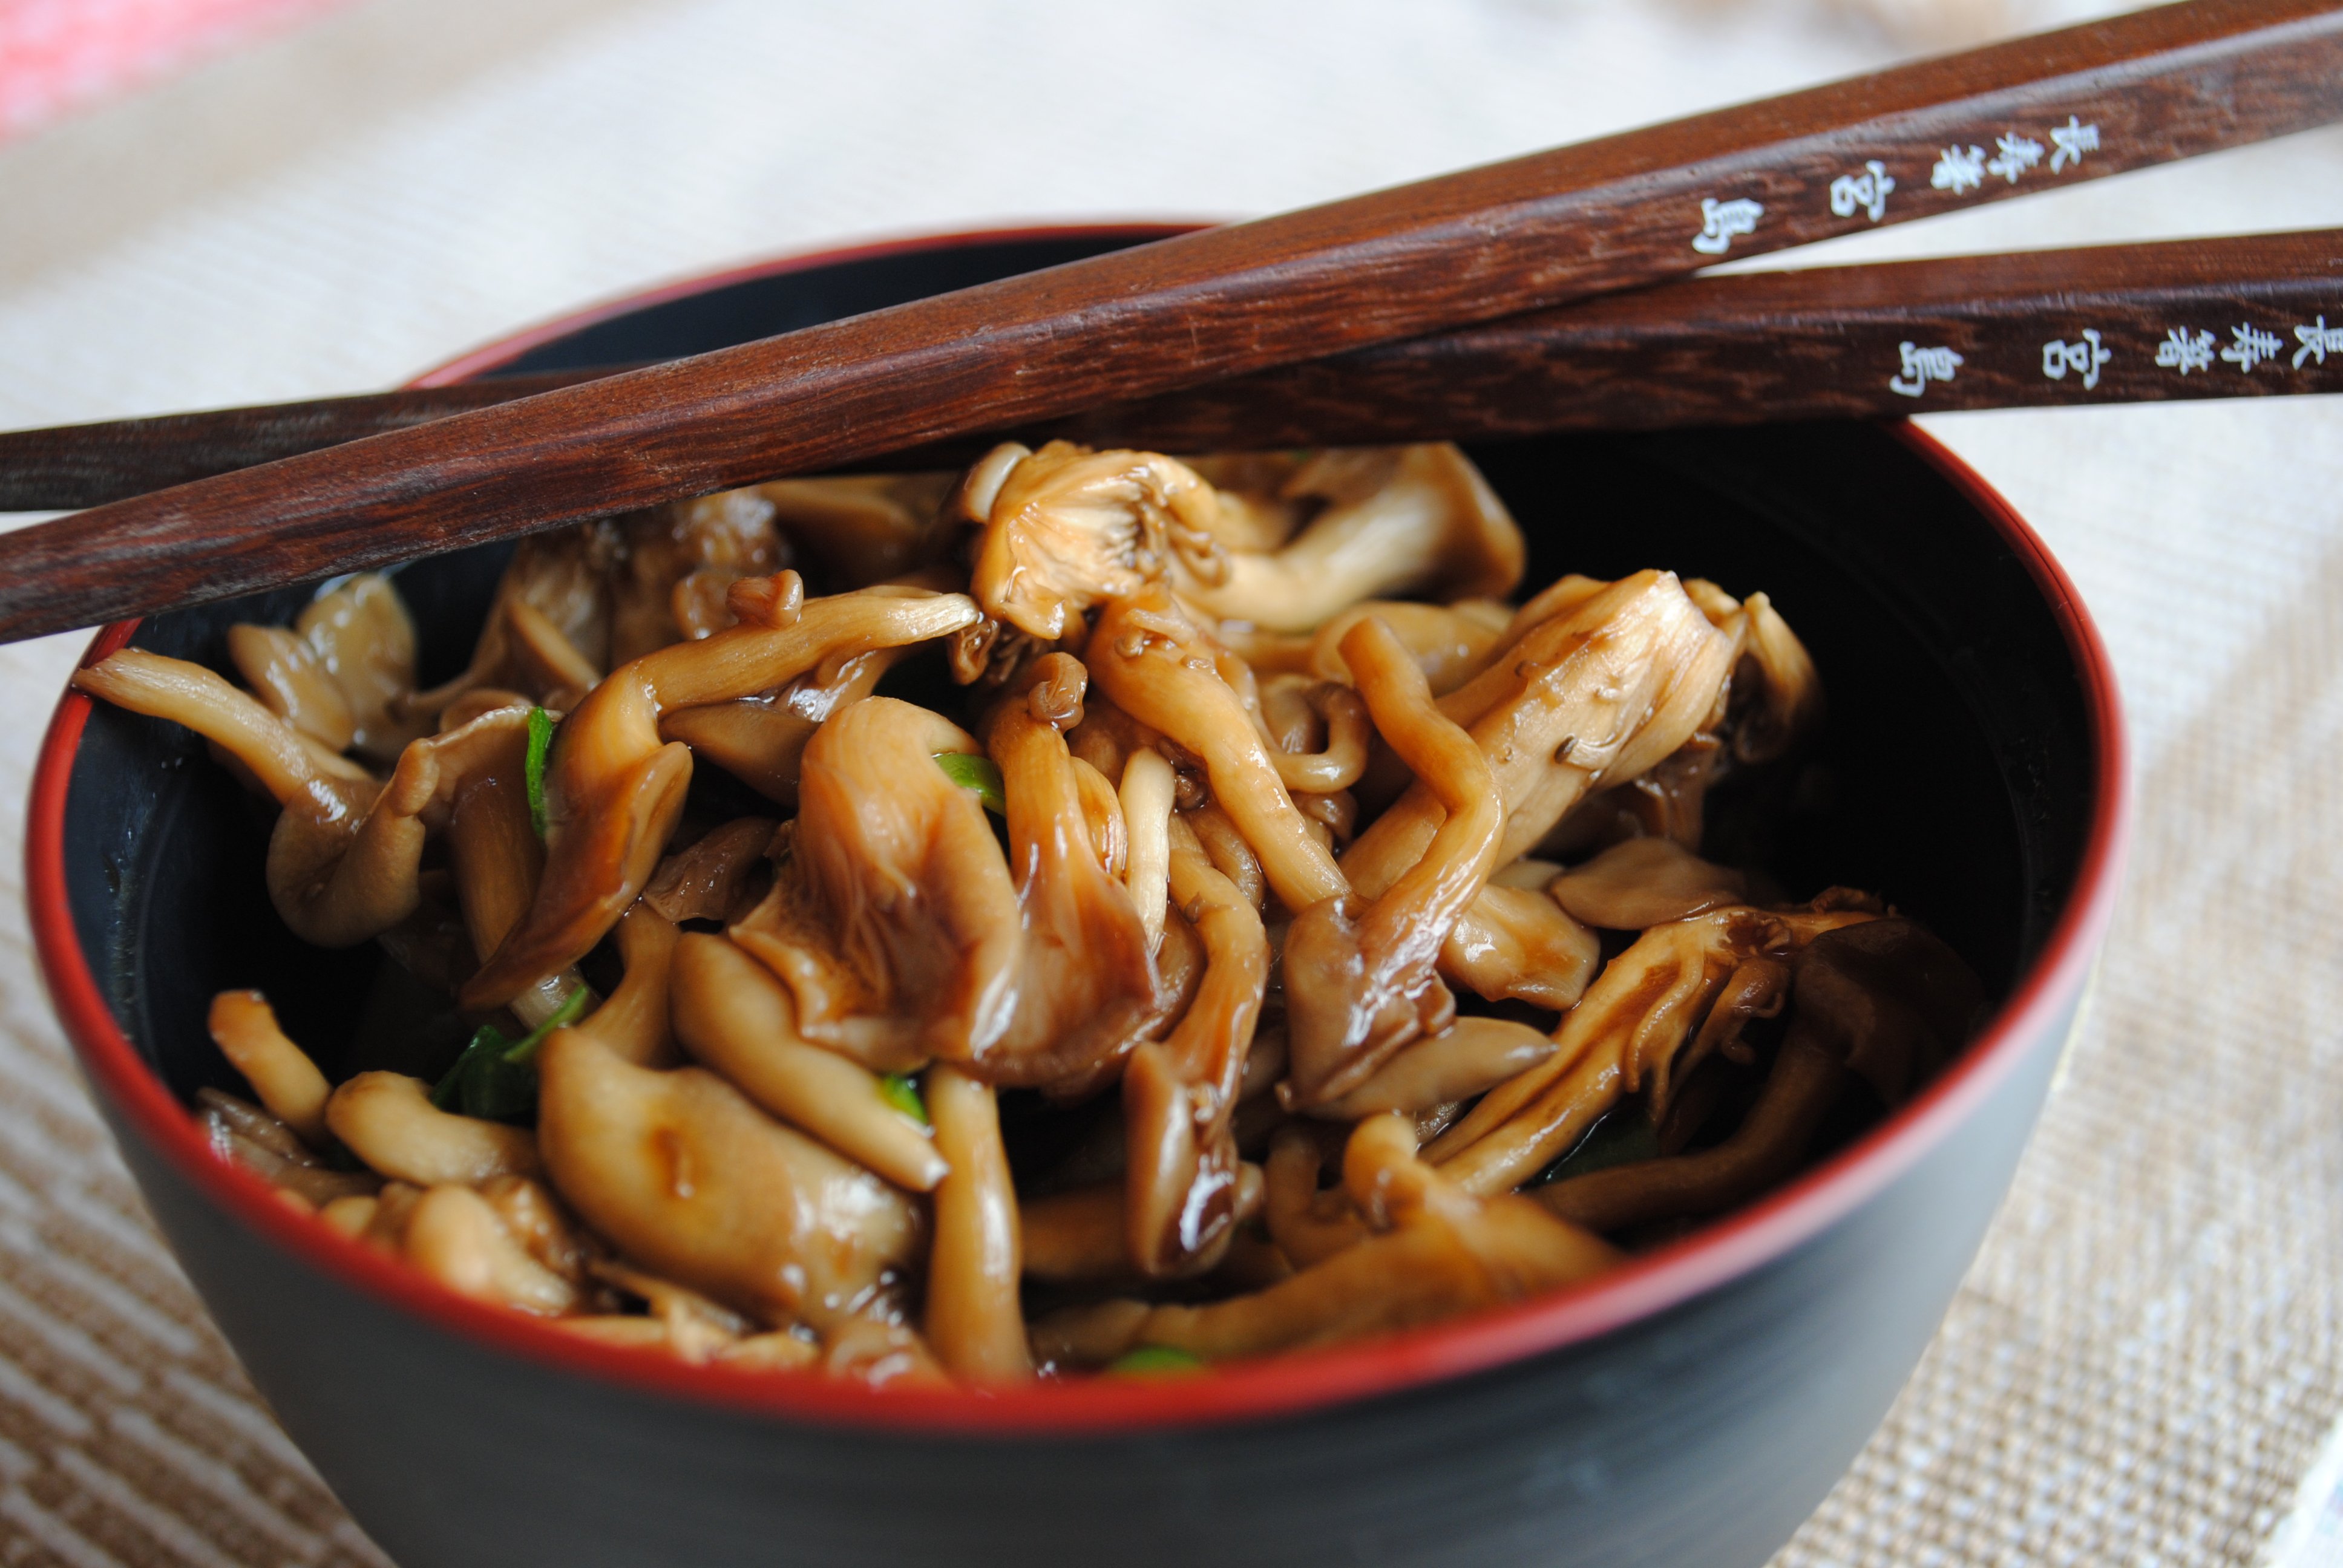 Receitas: 8 receitas de comidas japonesas para fazer em casa e receber os amigos